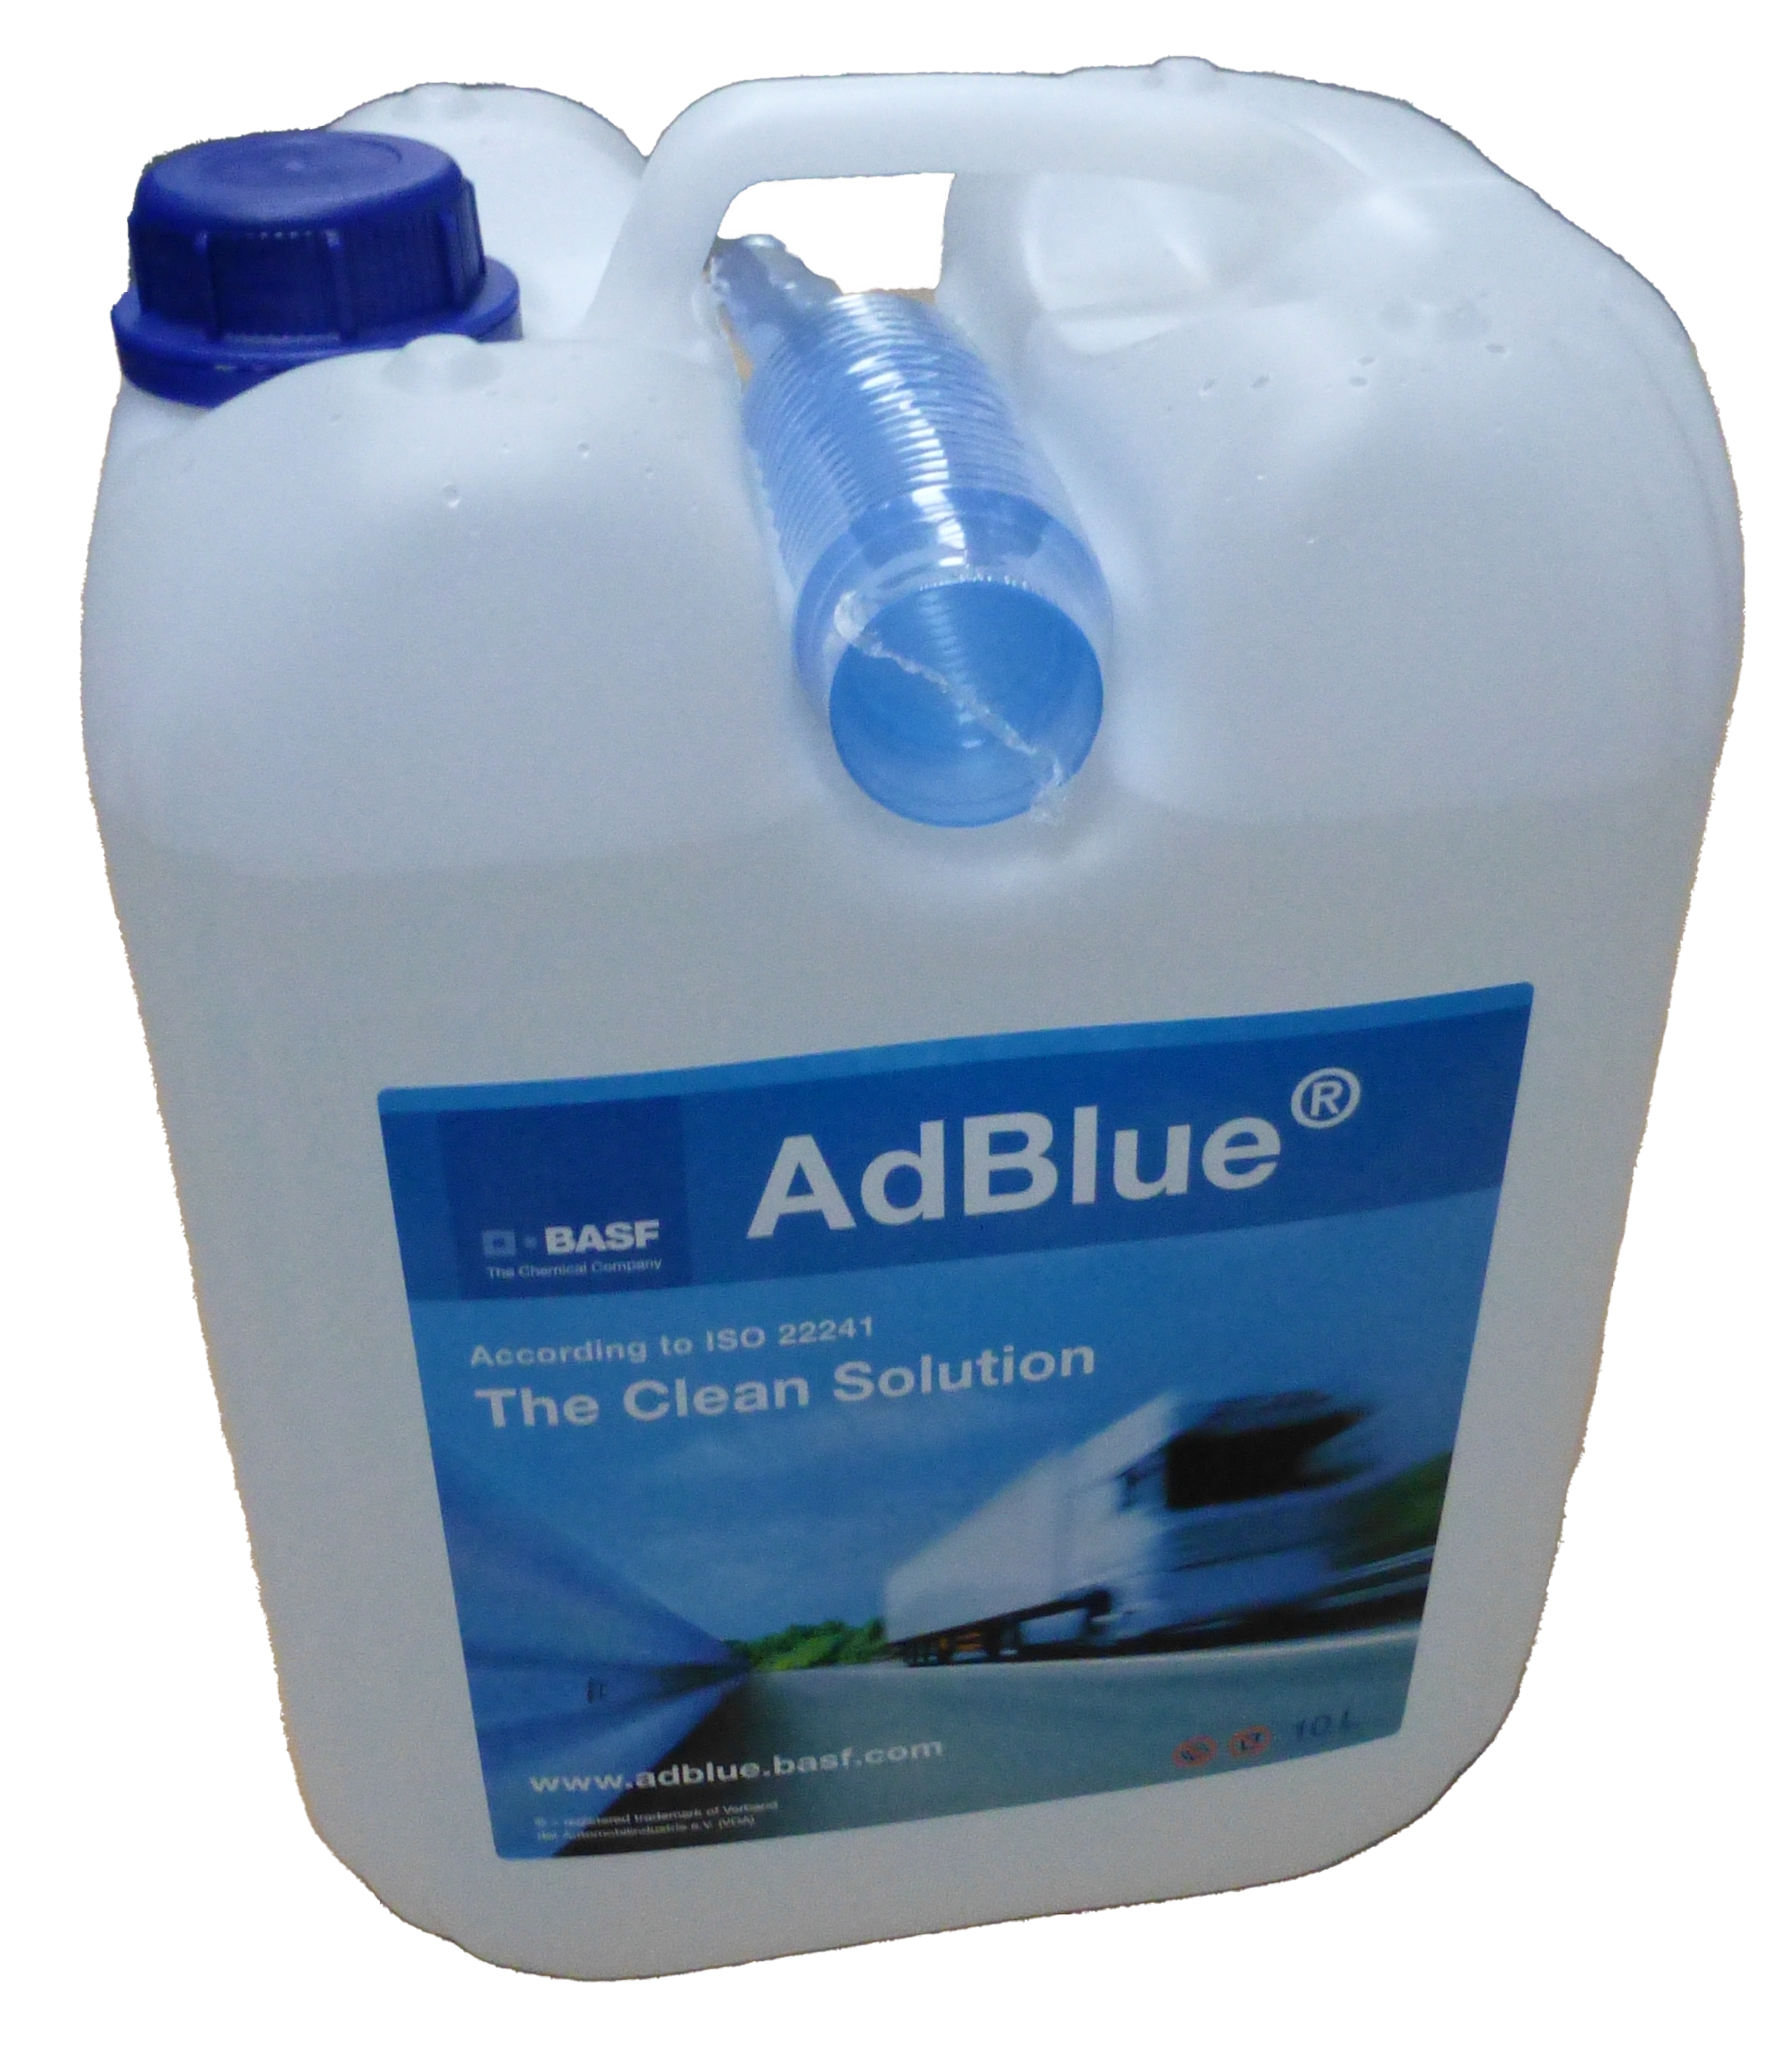 AdBlue Kanister mit Einfüllhilfe 5 Stück á 10 Liter